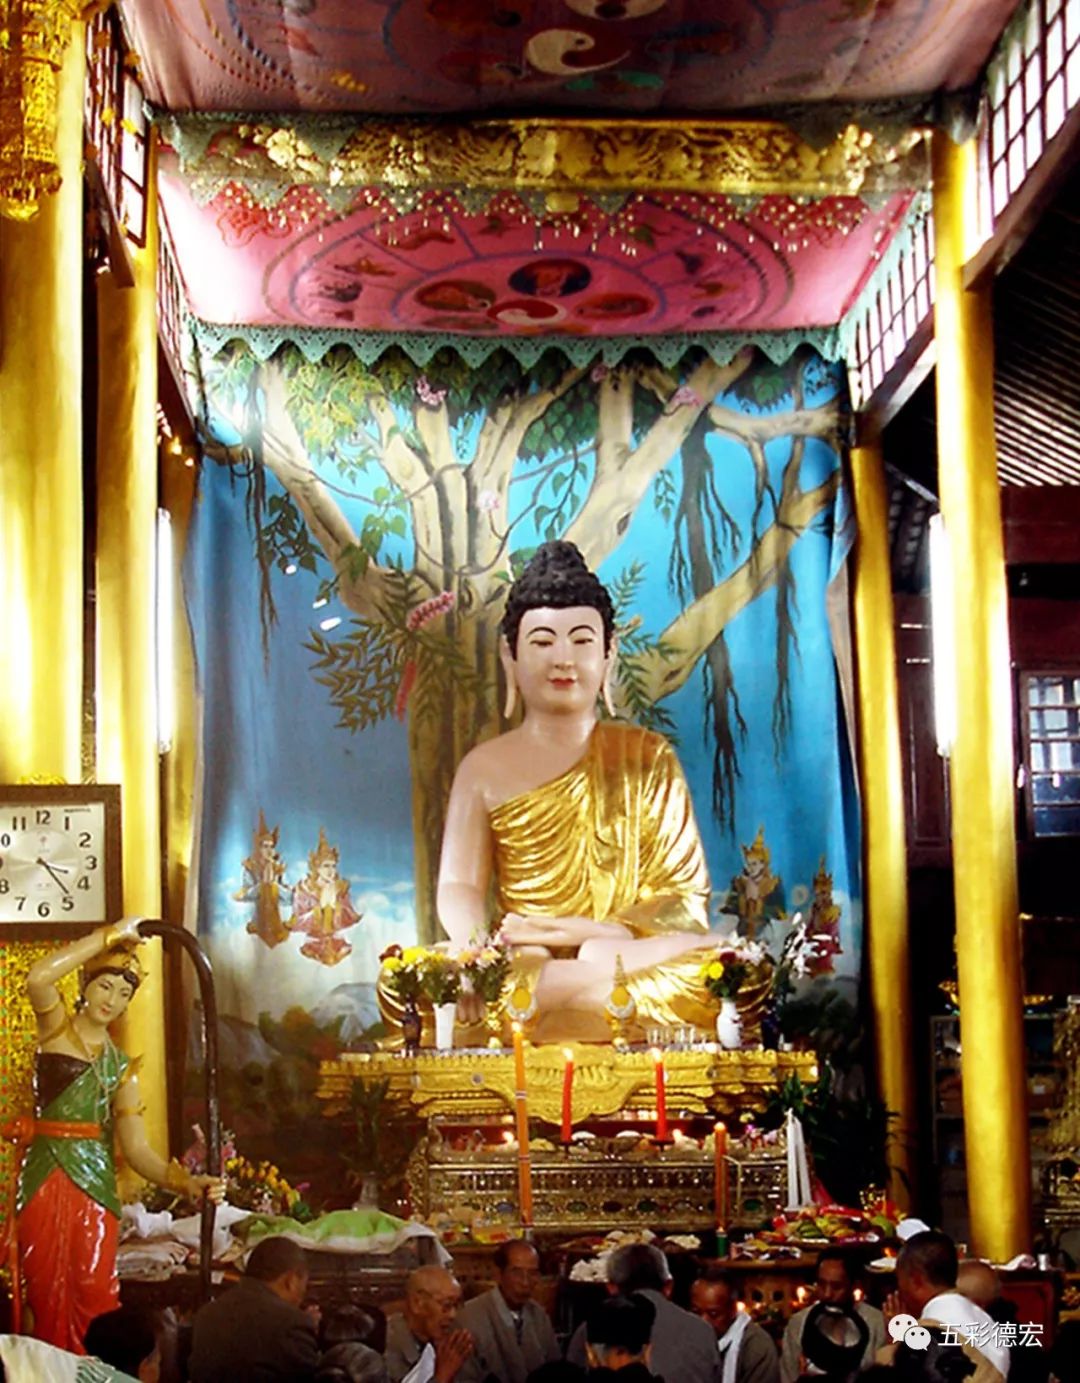 第1174期浅谈德宏傣族佛教造像艺术